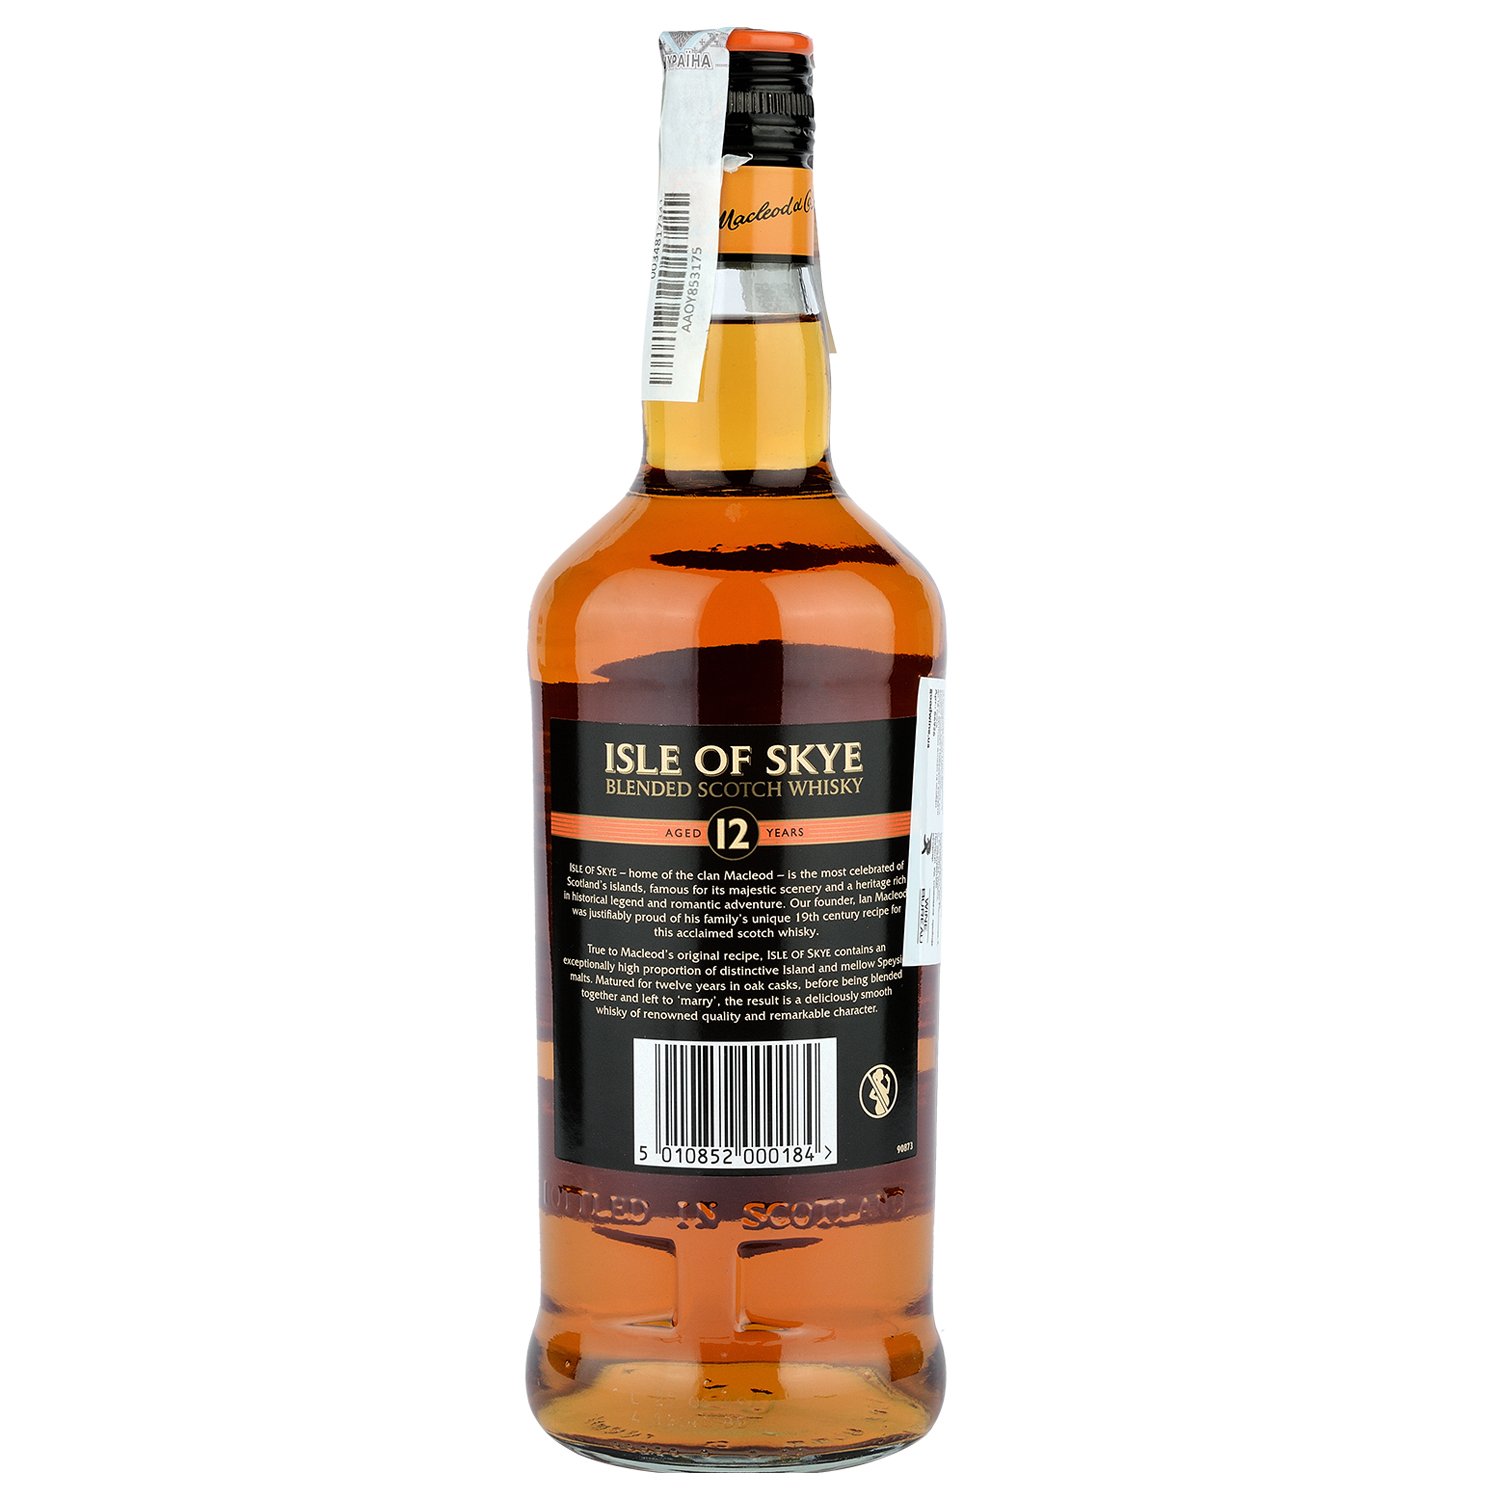 Виски Isle of Skye Blended Scotch Whisky 12 yo, в подарочной упаковке, 40%, 0,7 л - фото 2